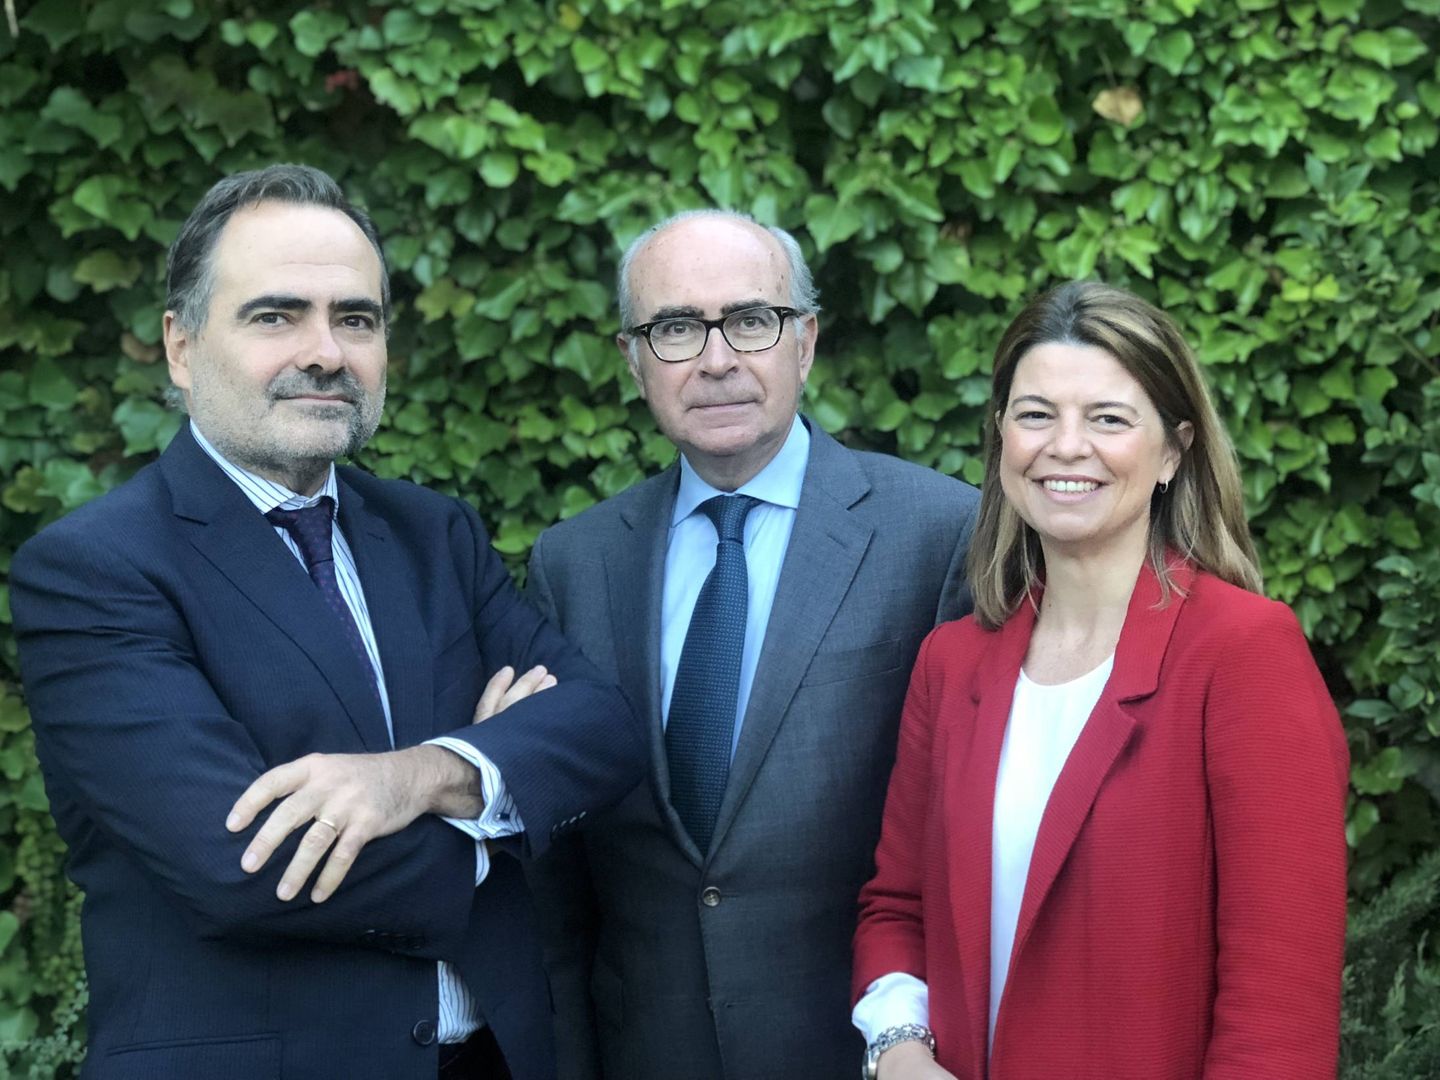 De izquierda a derecha, Javier Zapata, Juan Pérez Calot y María Calonje, unidad de gobierno corporativo de finReg